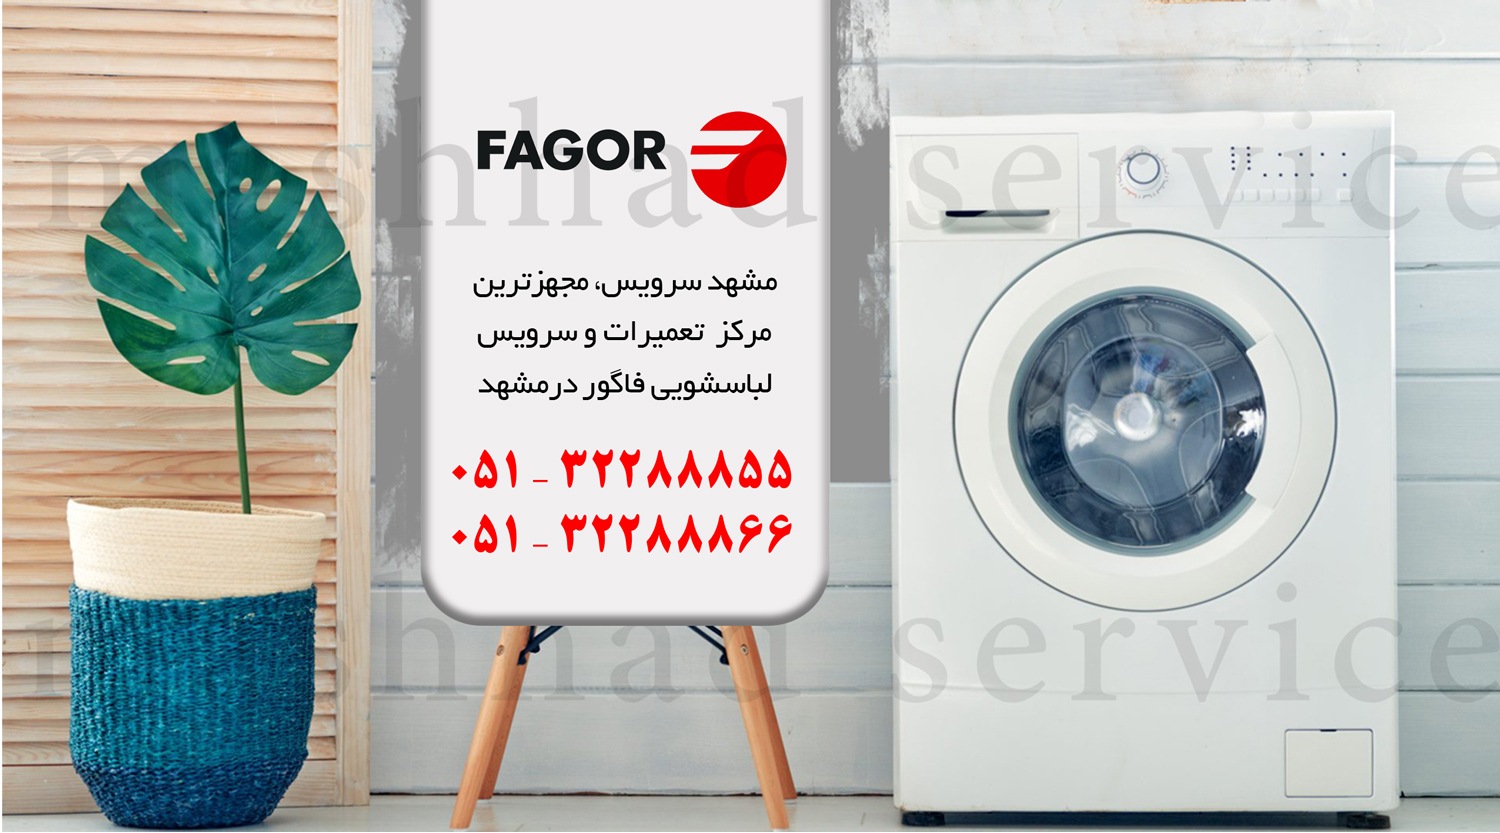 تعمیر ماشین لباسشویی فاگور در مشهد